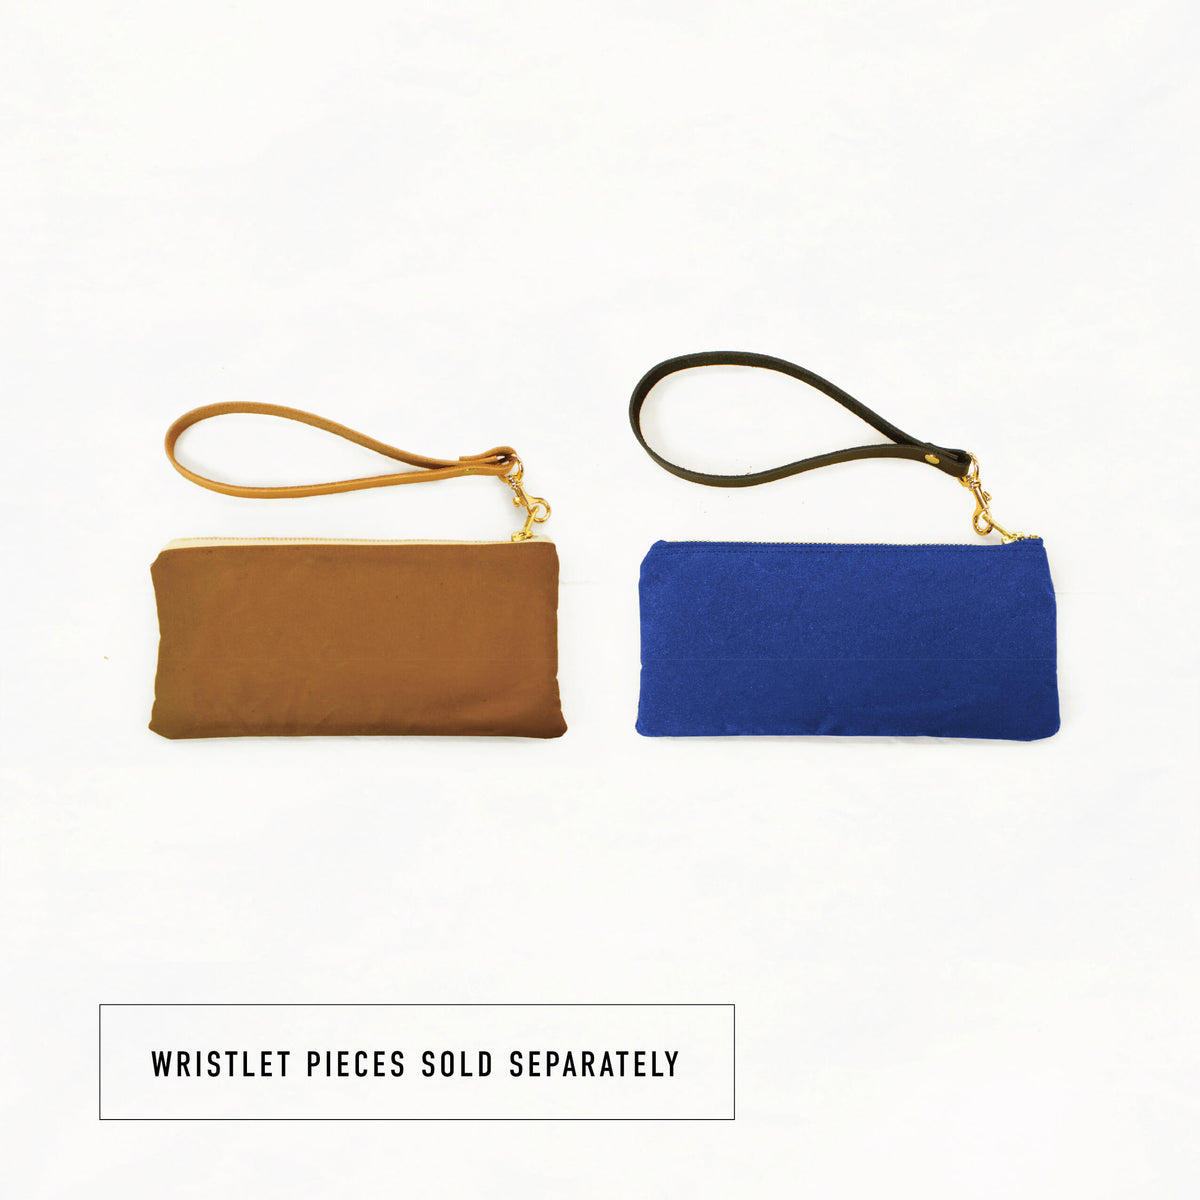 Zipper Pouch Kits with Pendleton® Wool - Grab Bag!